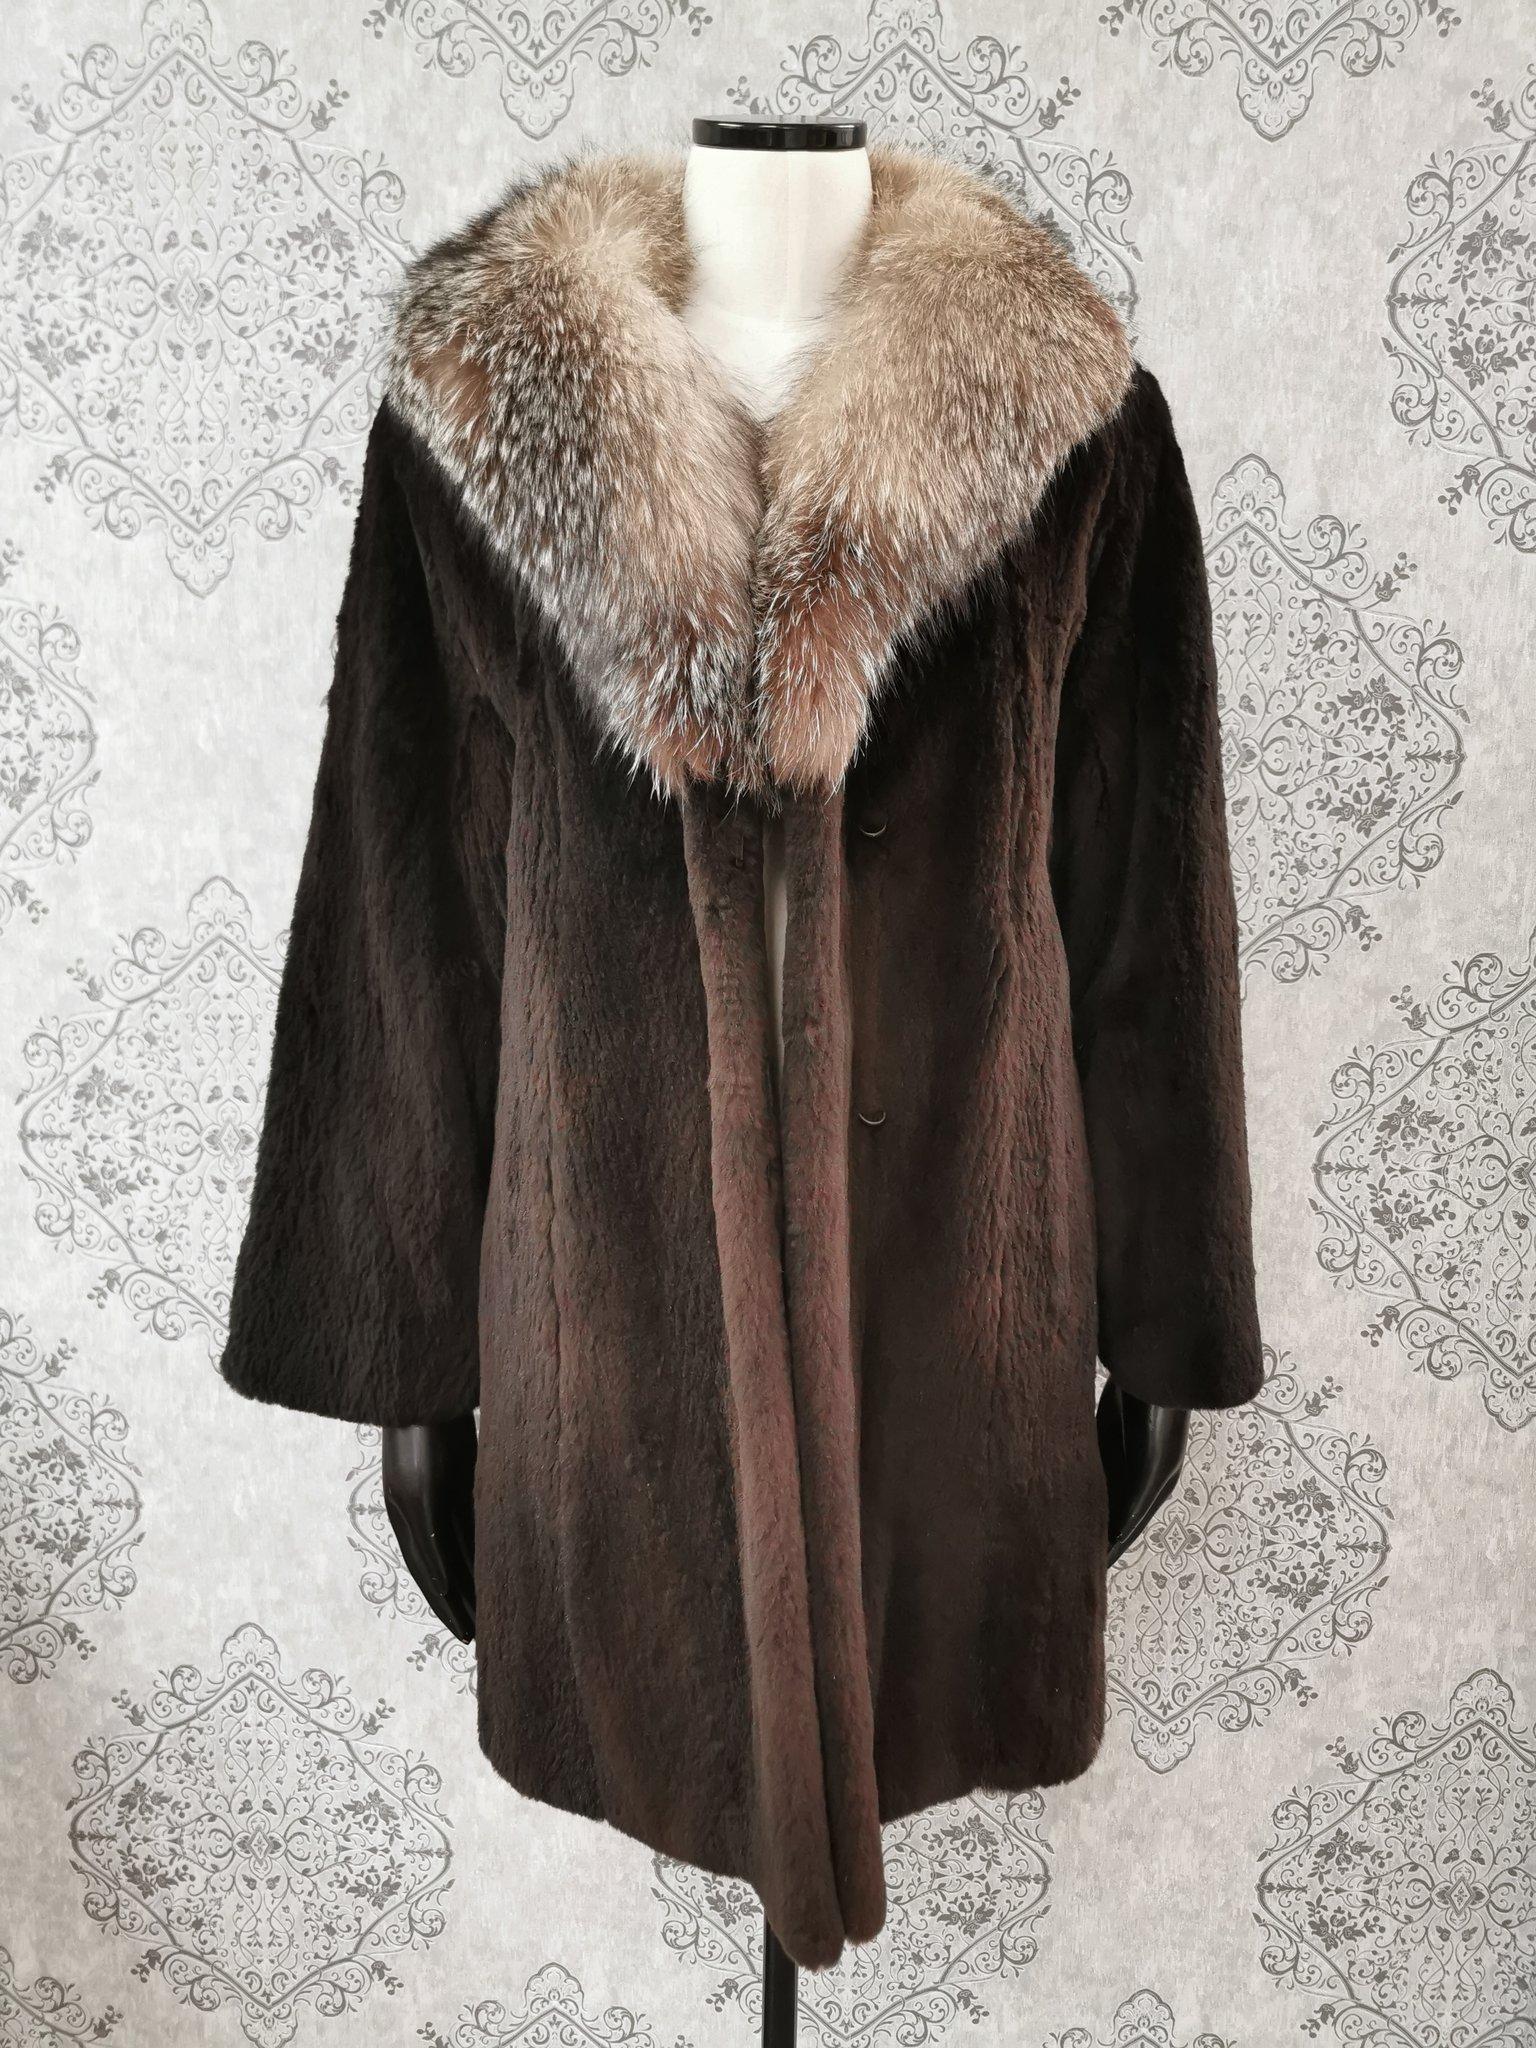 sheared beaver coat